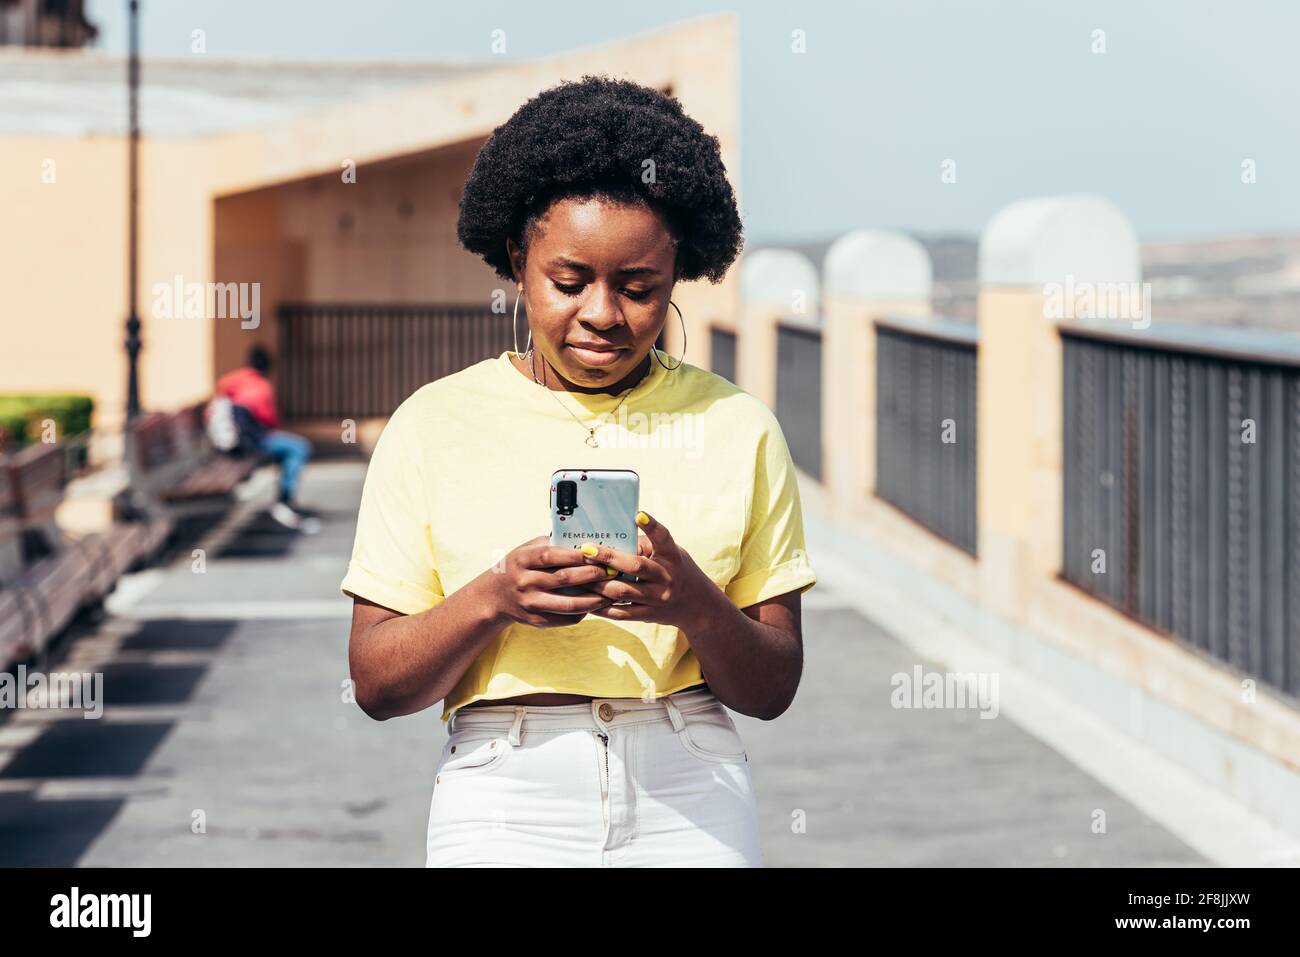 Ritratto di ragazza nera con capelli afro e orecchini a cerchio utilizzando il suo telefono cellulare e camminando in uno spazio urbano. Foto Stock